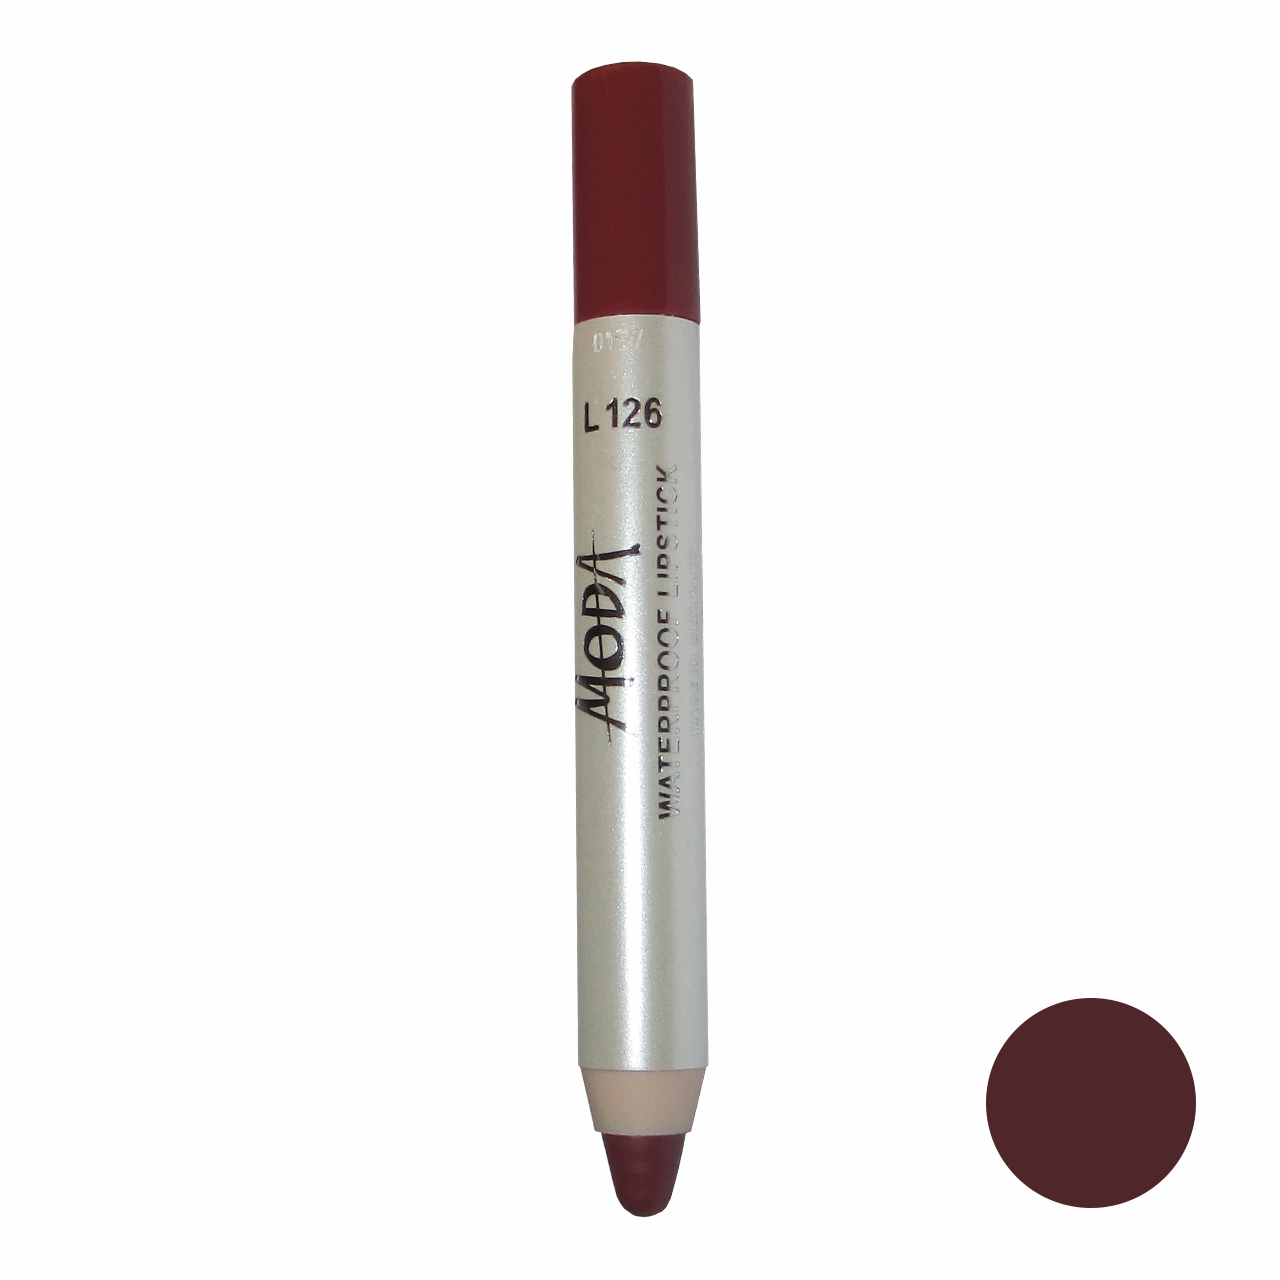 رژلب مدادی مودا مدل waterproof lipstick شماره L126